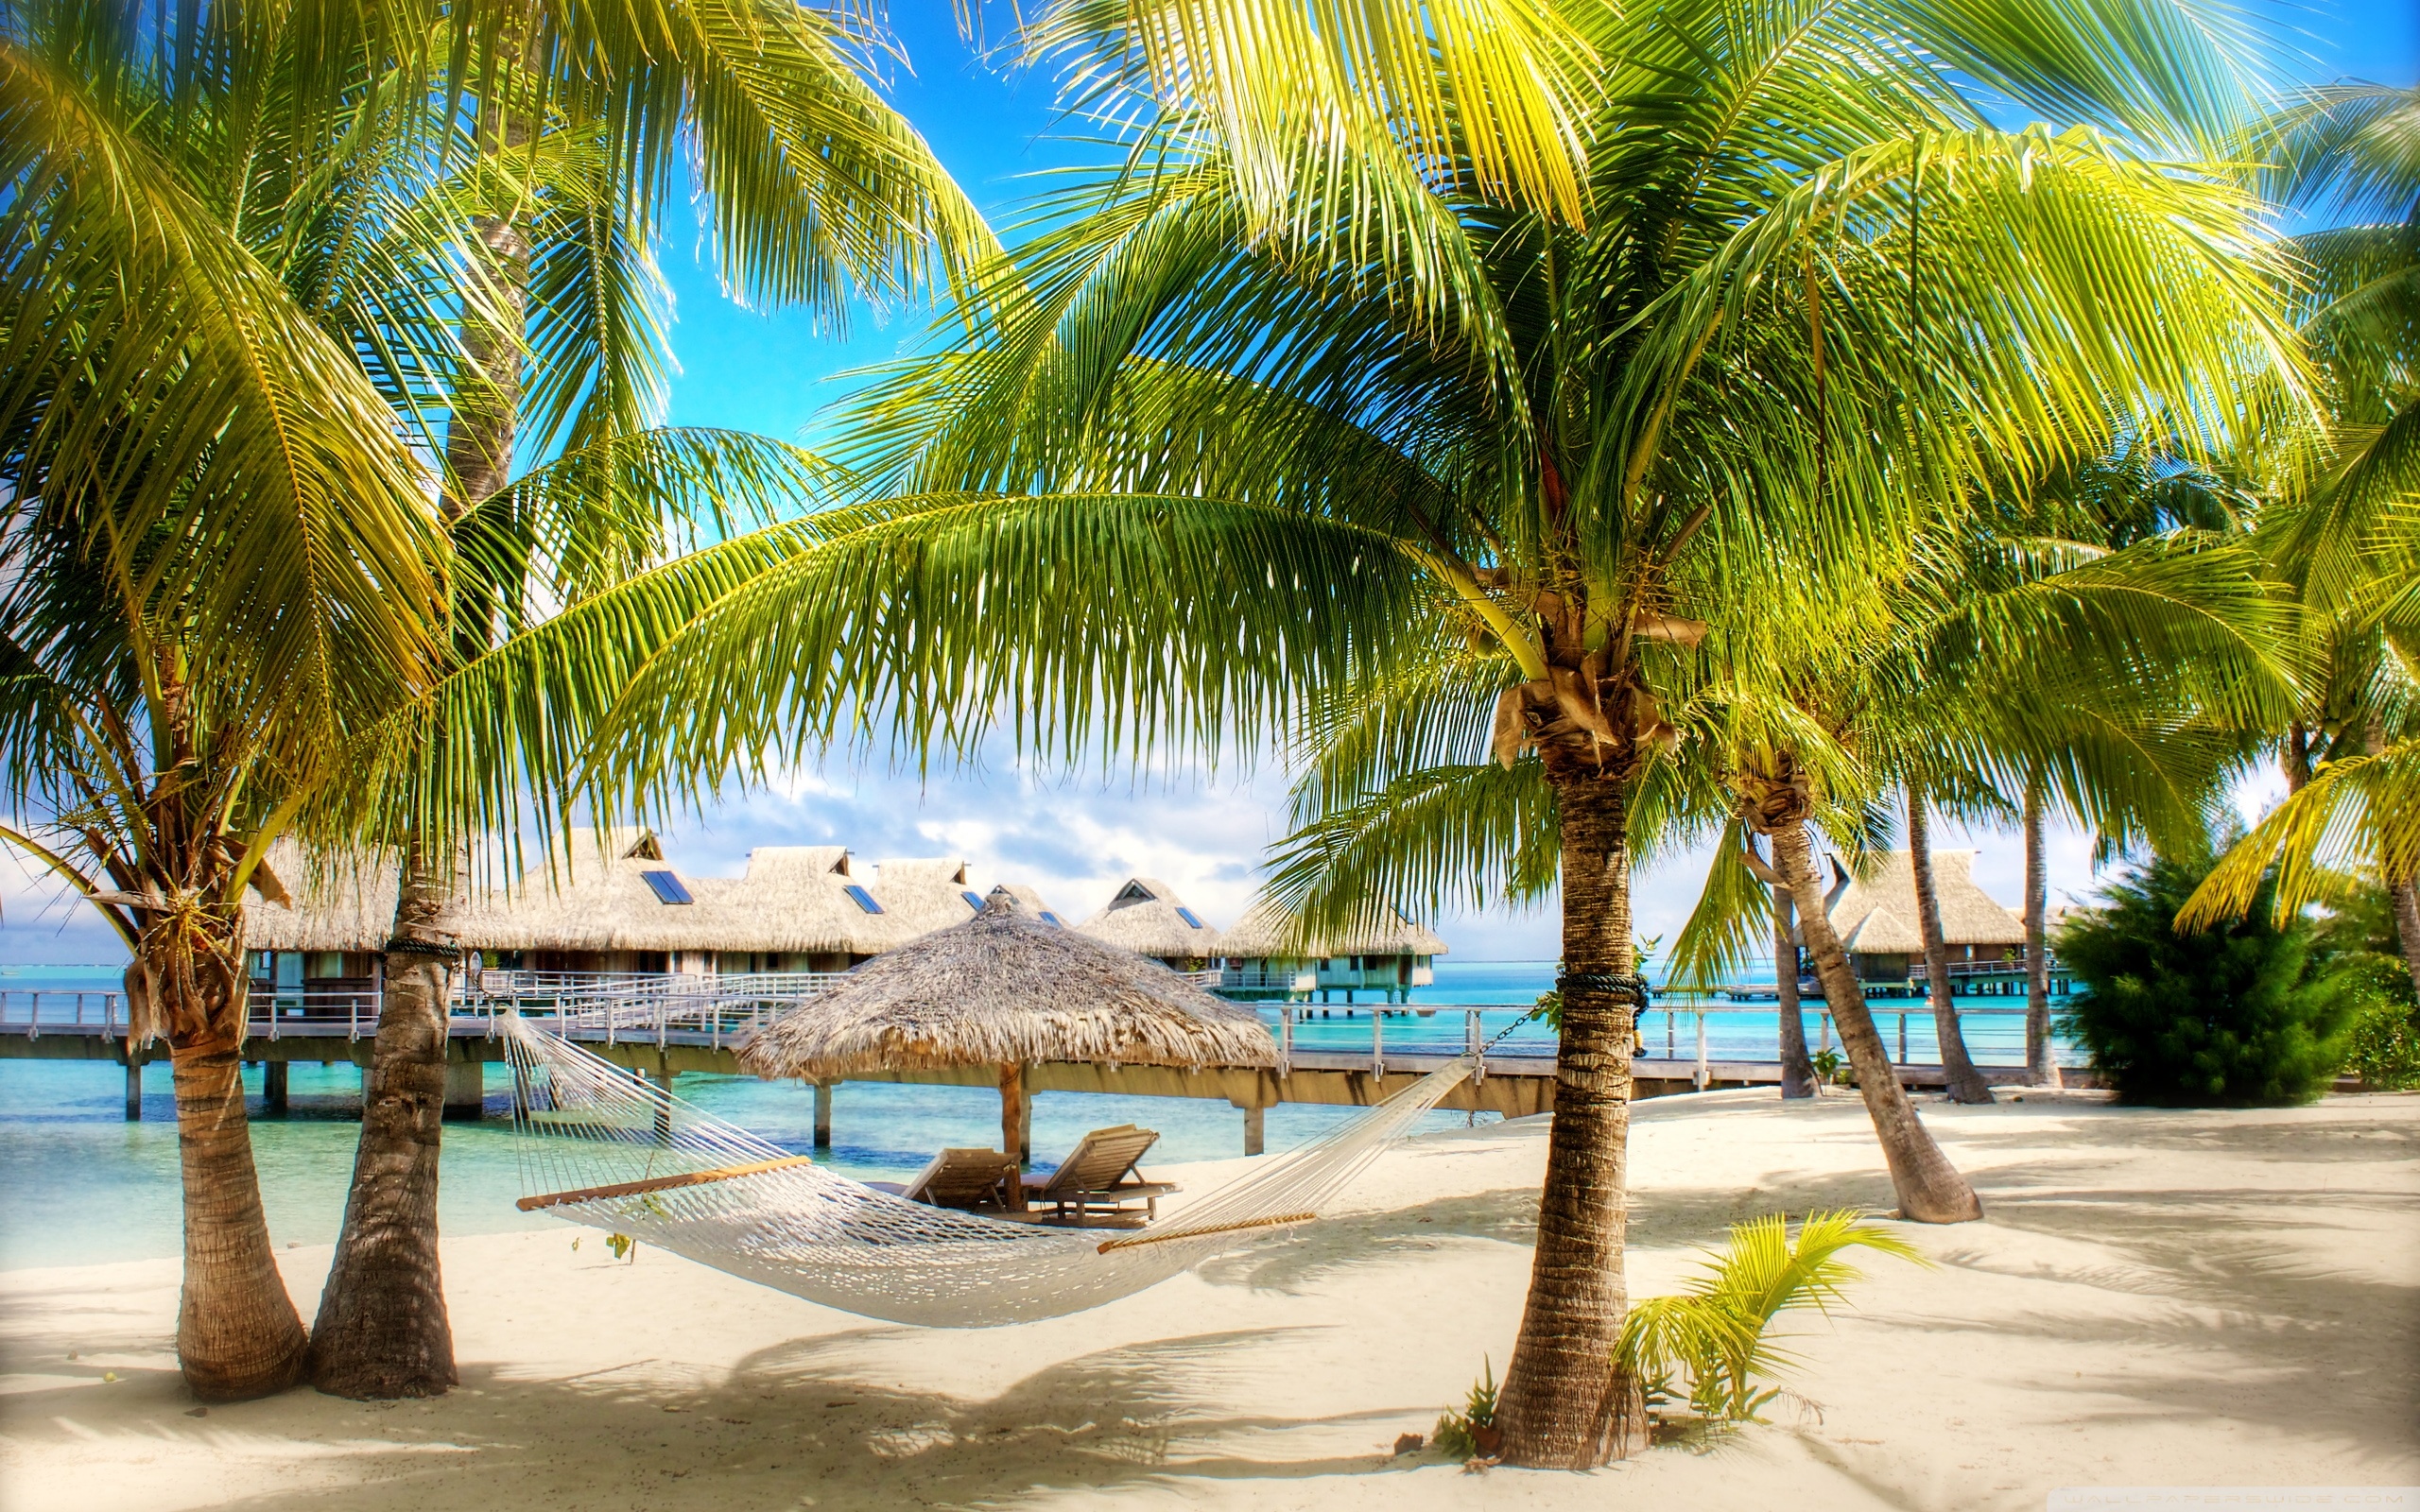 Tropical Beach Resort 4k HD Desktop Wallpaper For Ultra